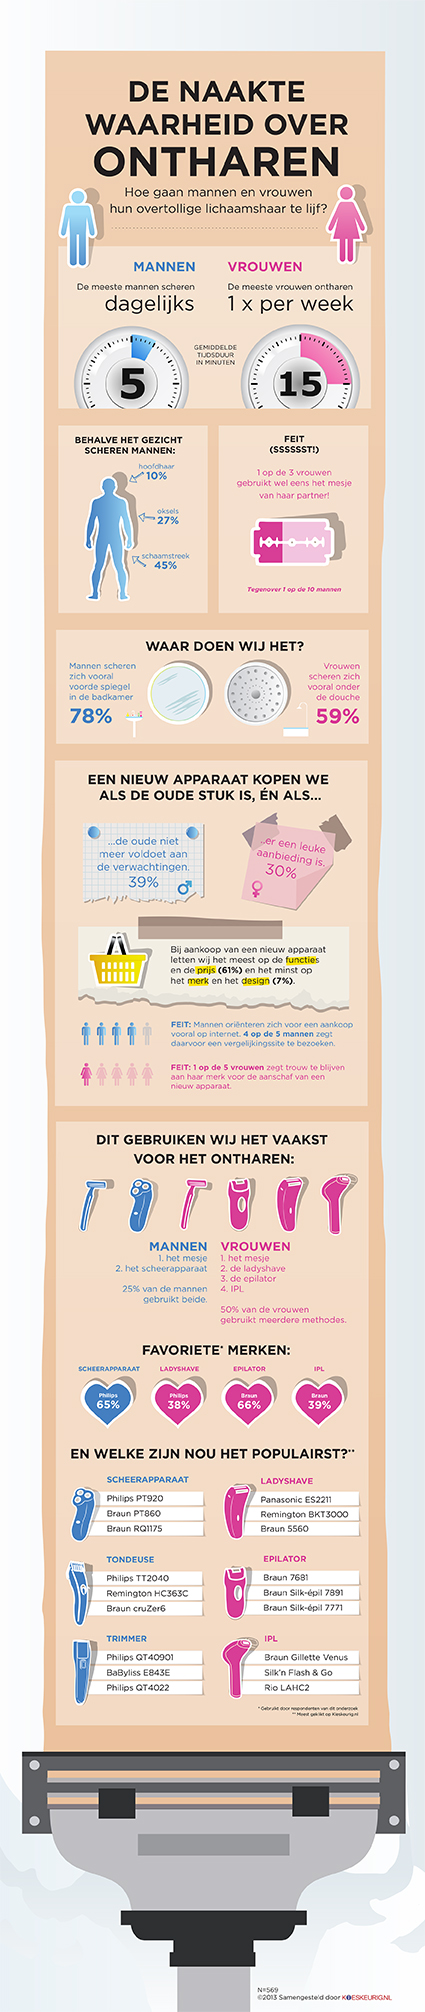 infographic: De naakte waarheid over ontharen